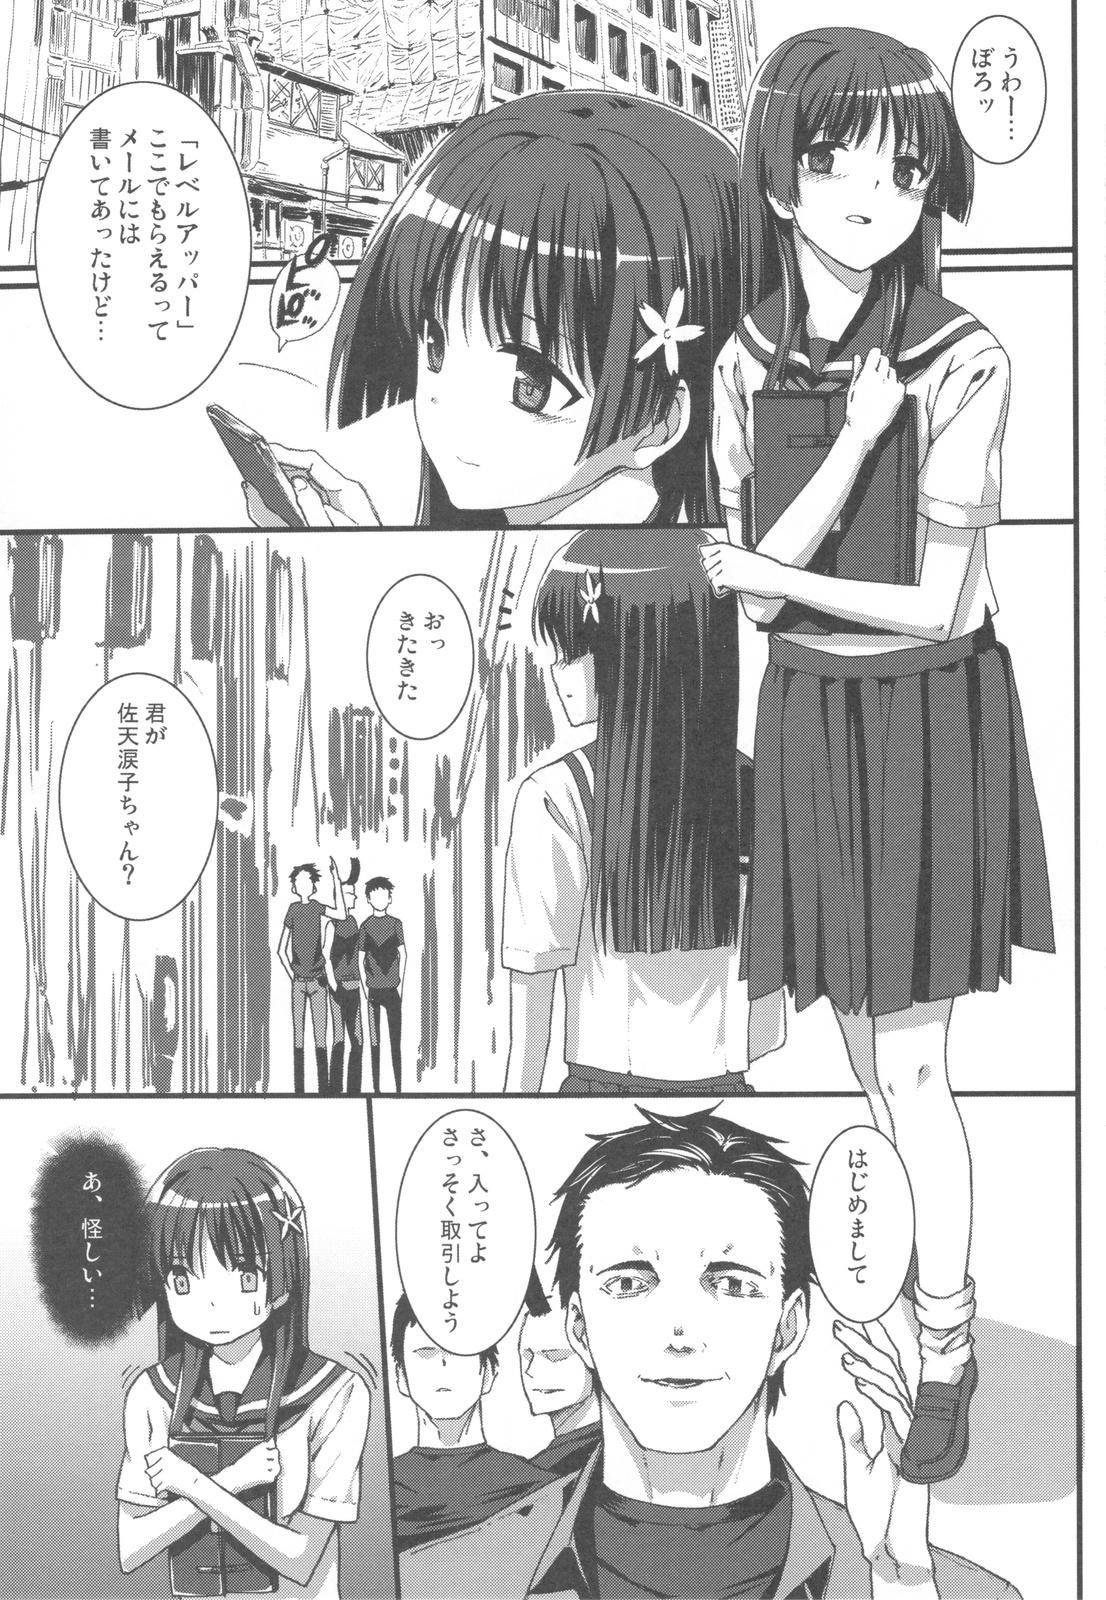 Innocent OVER-UPPER Saten Ruiko BAD - Toaru kagaku no railgun Ruiva - Page 5